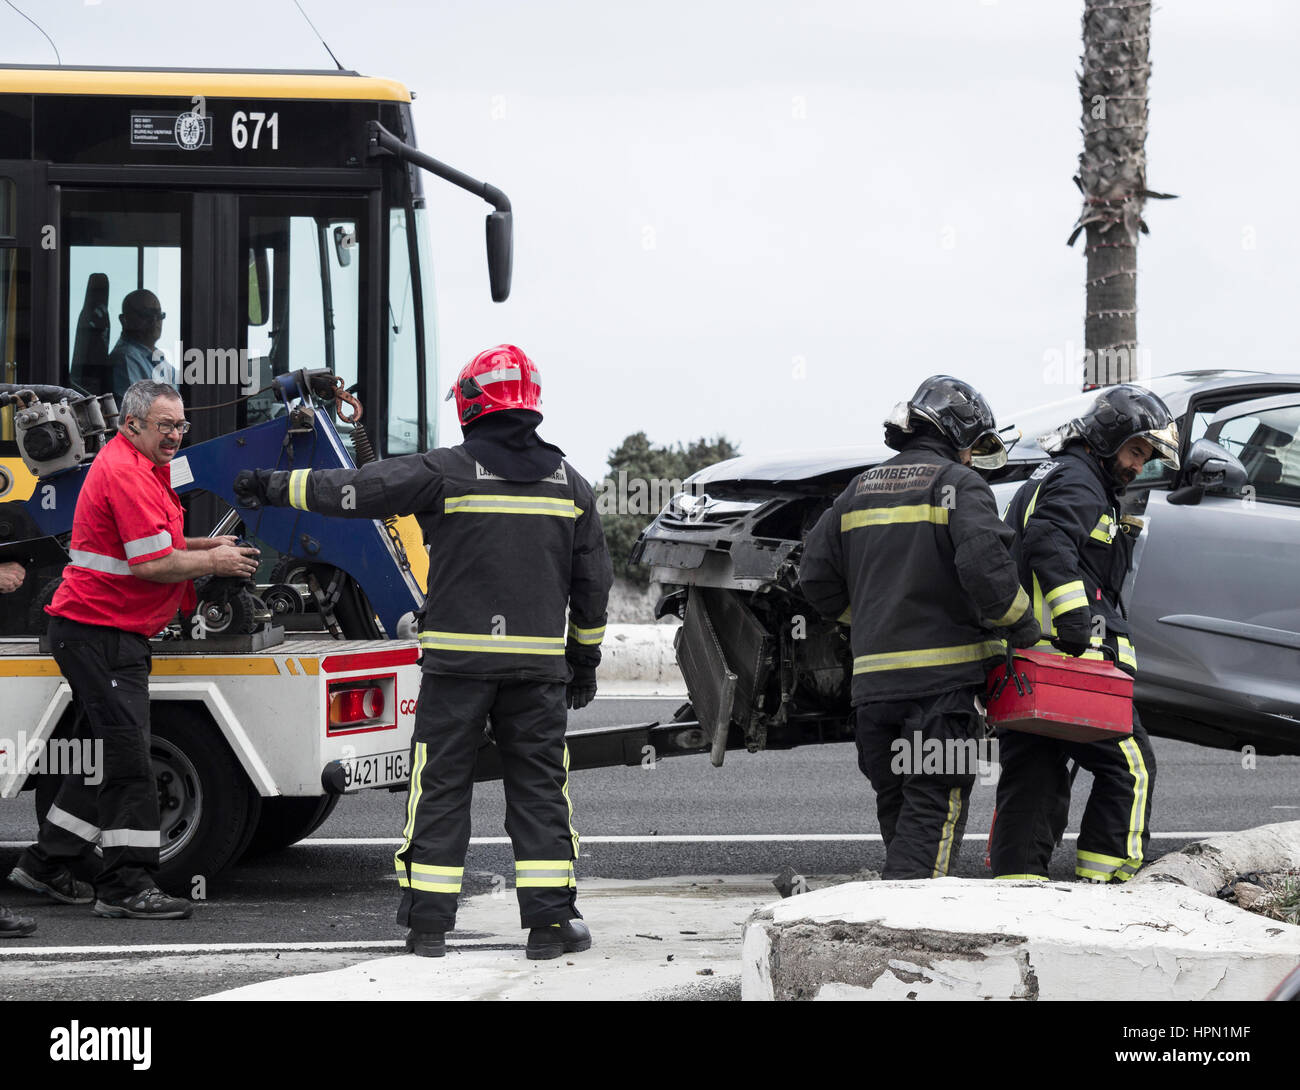 Accident de la route en Espagne avec les pompiers (bomberos) présents. Banque D'Images